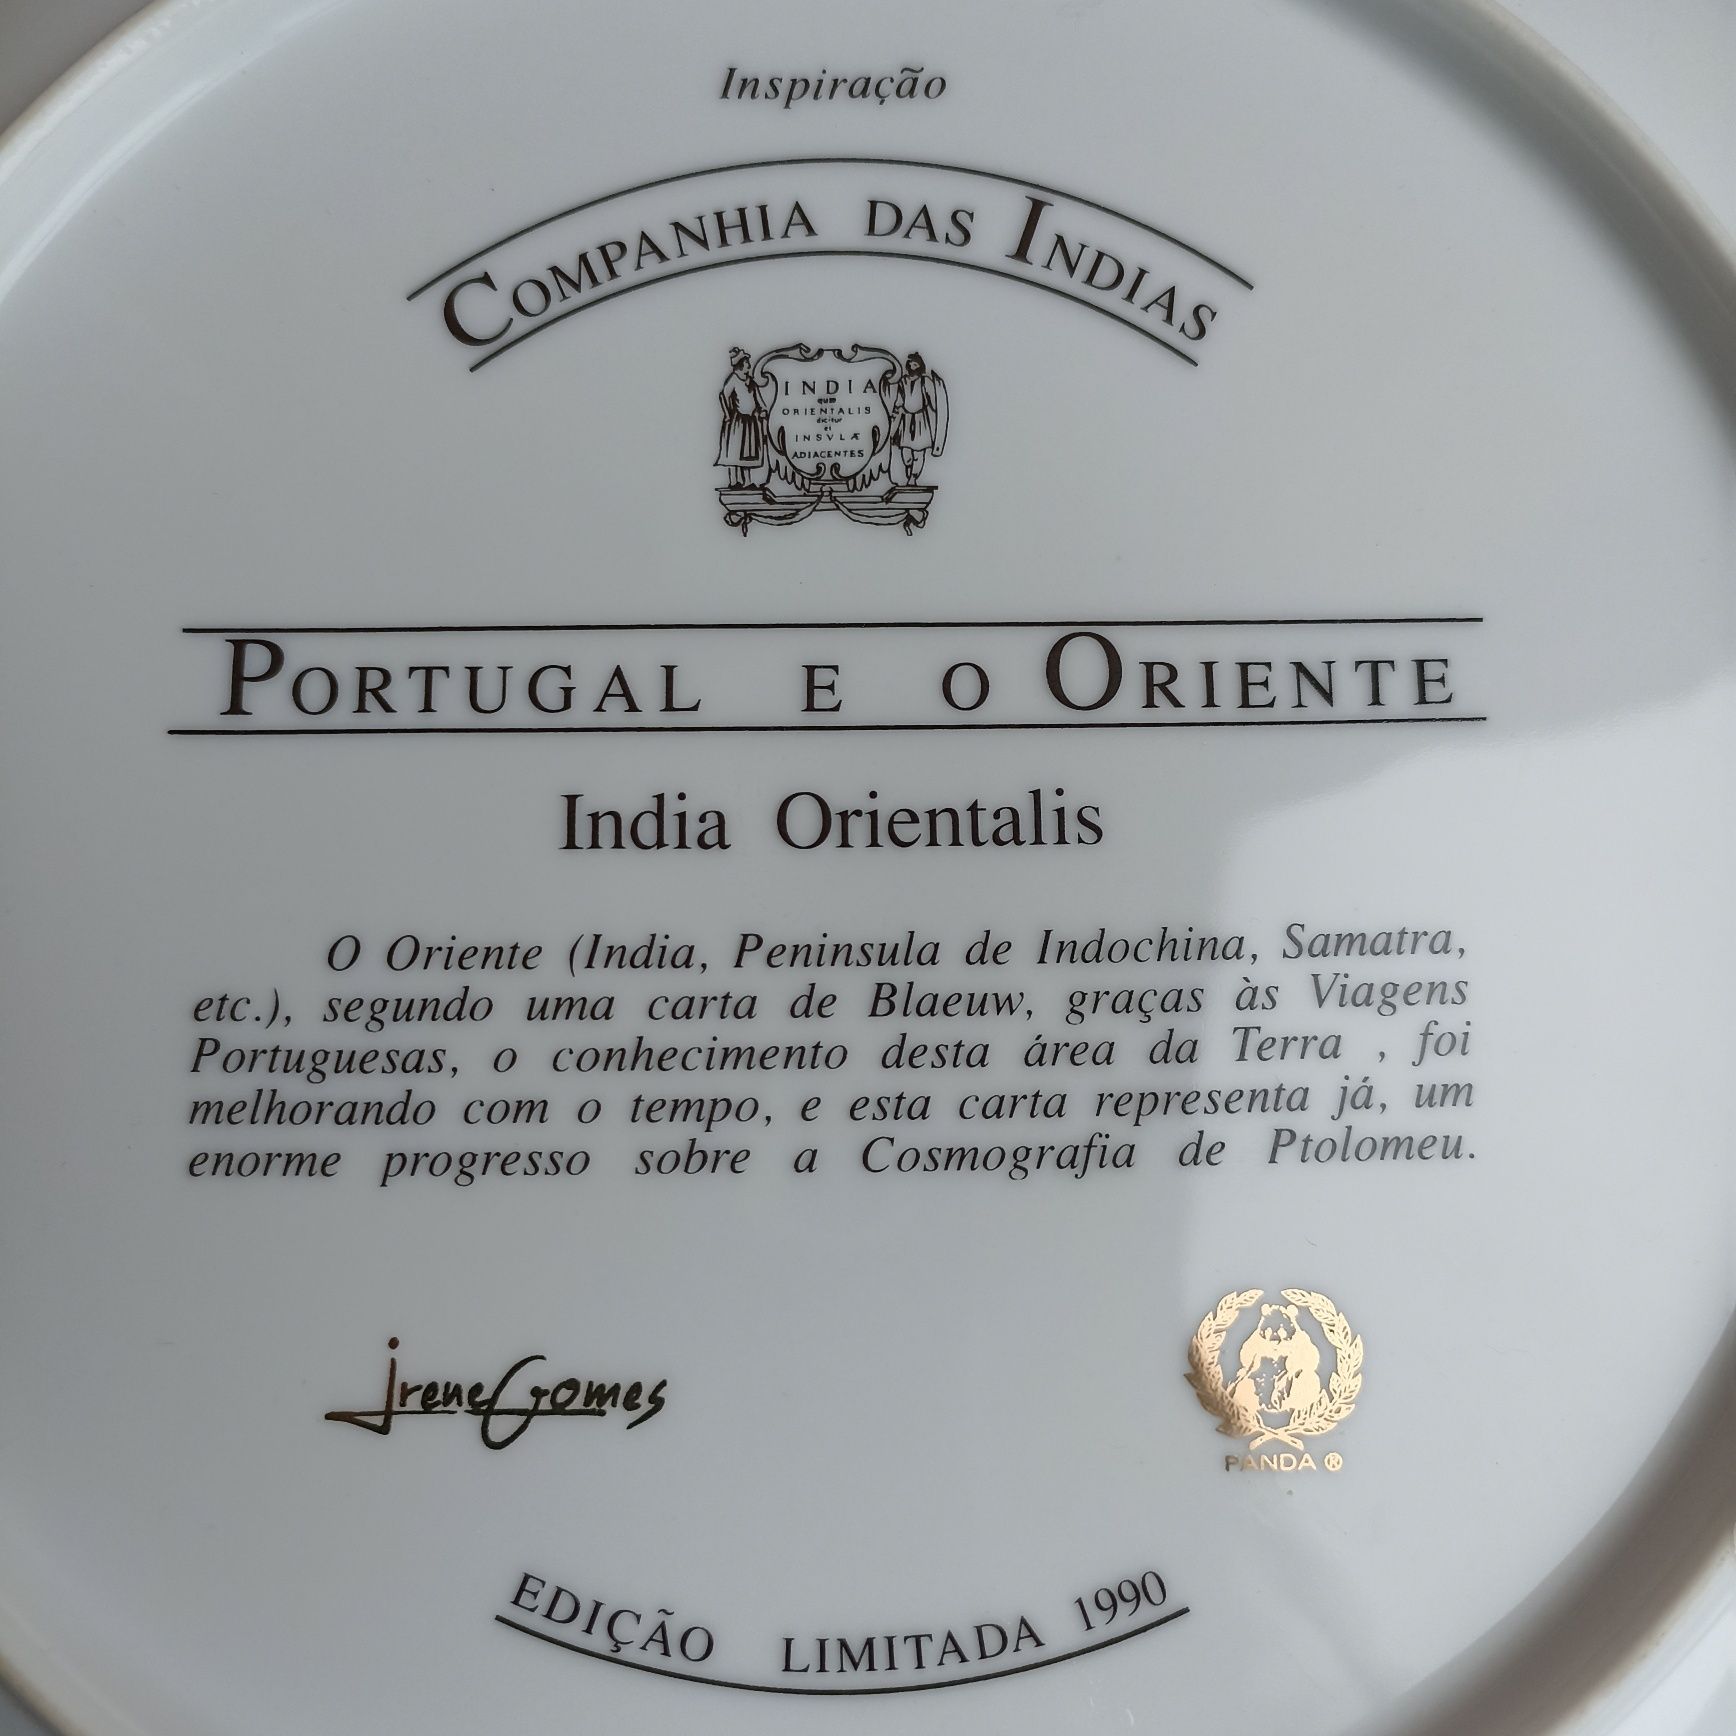 Prato Inspiração Companhia das Índias Portugal e o Oriente mapa